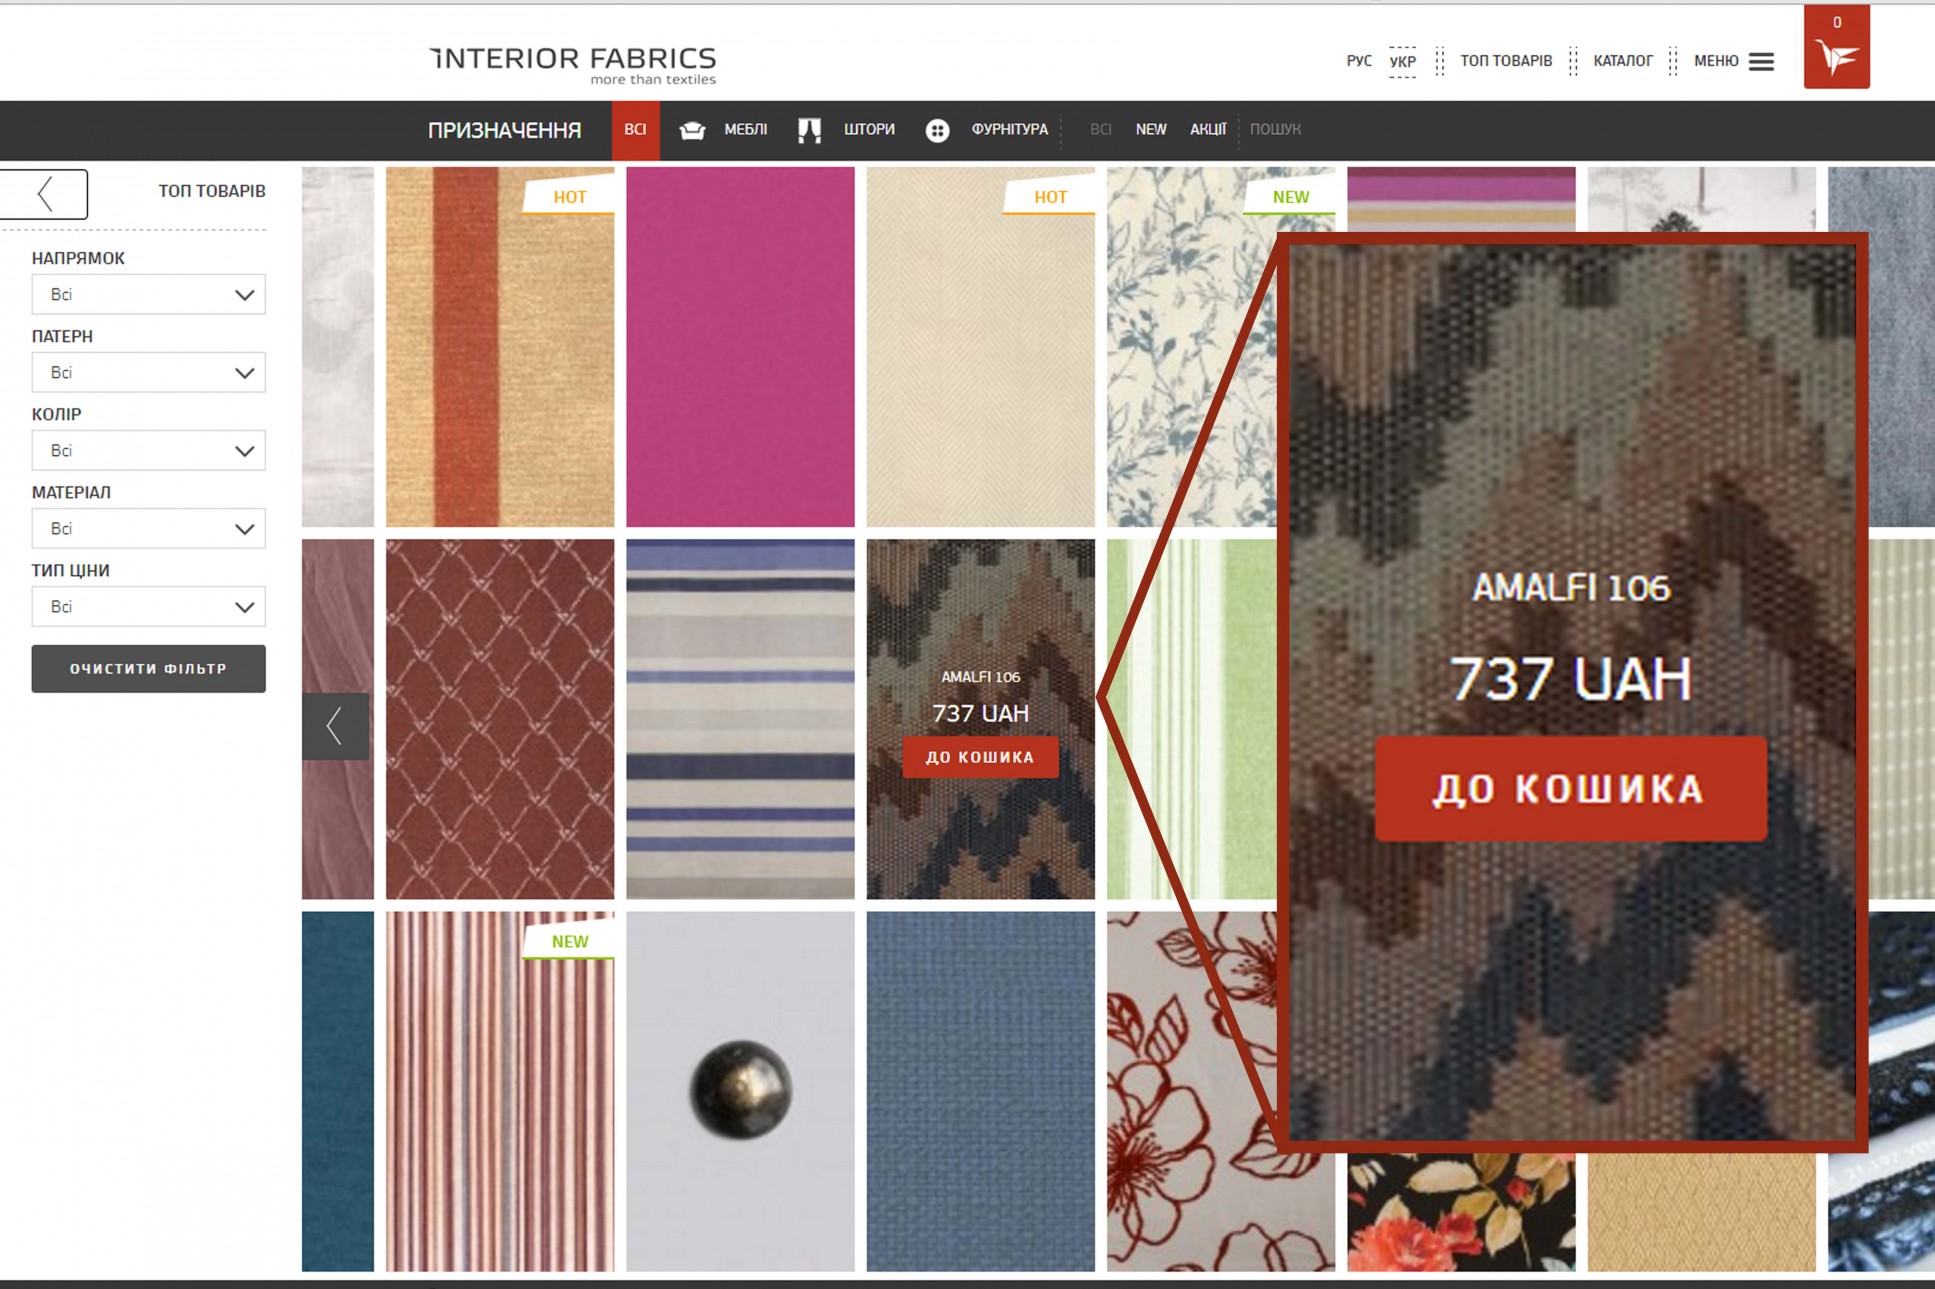 Улучшенный каталог товаров Interior Fabrics– покупать стало еще легче